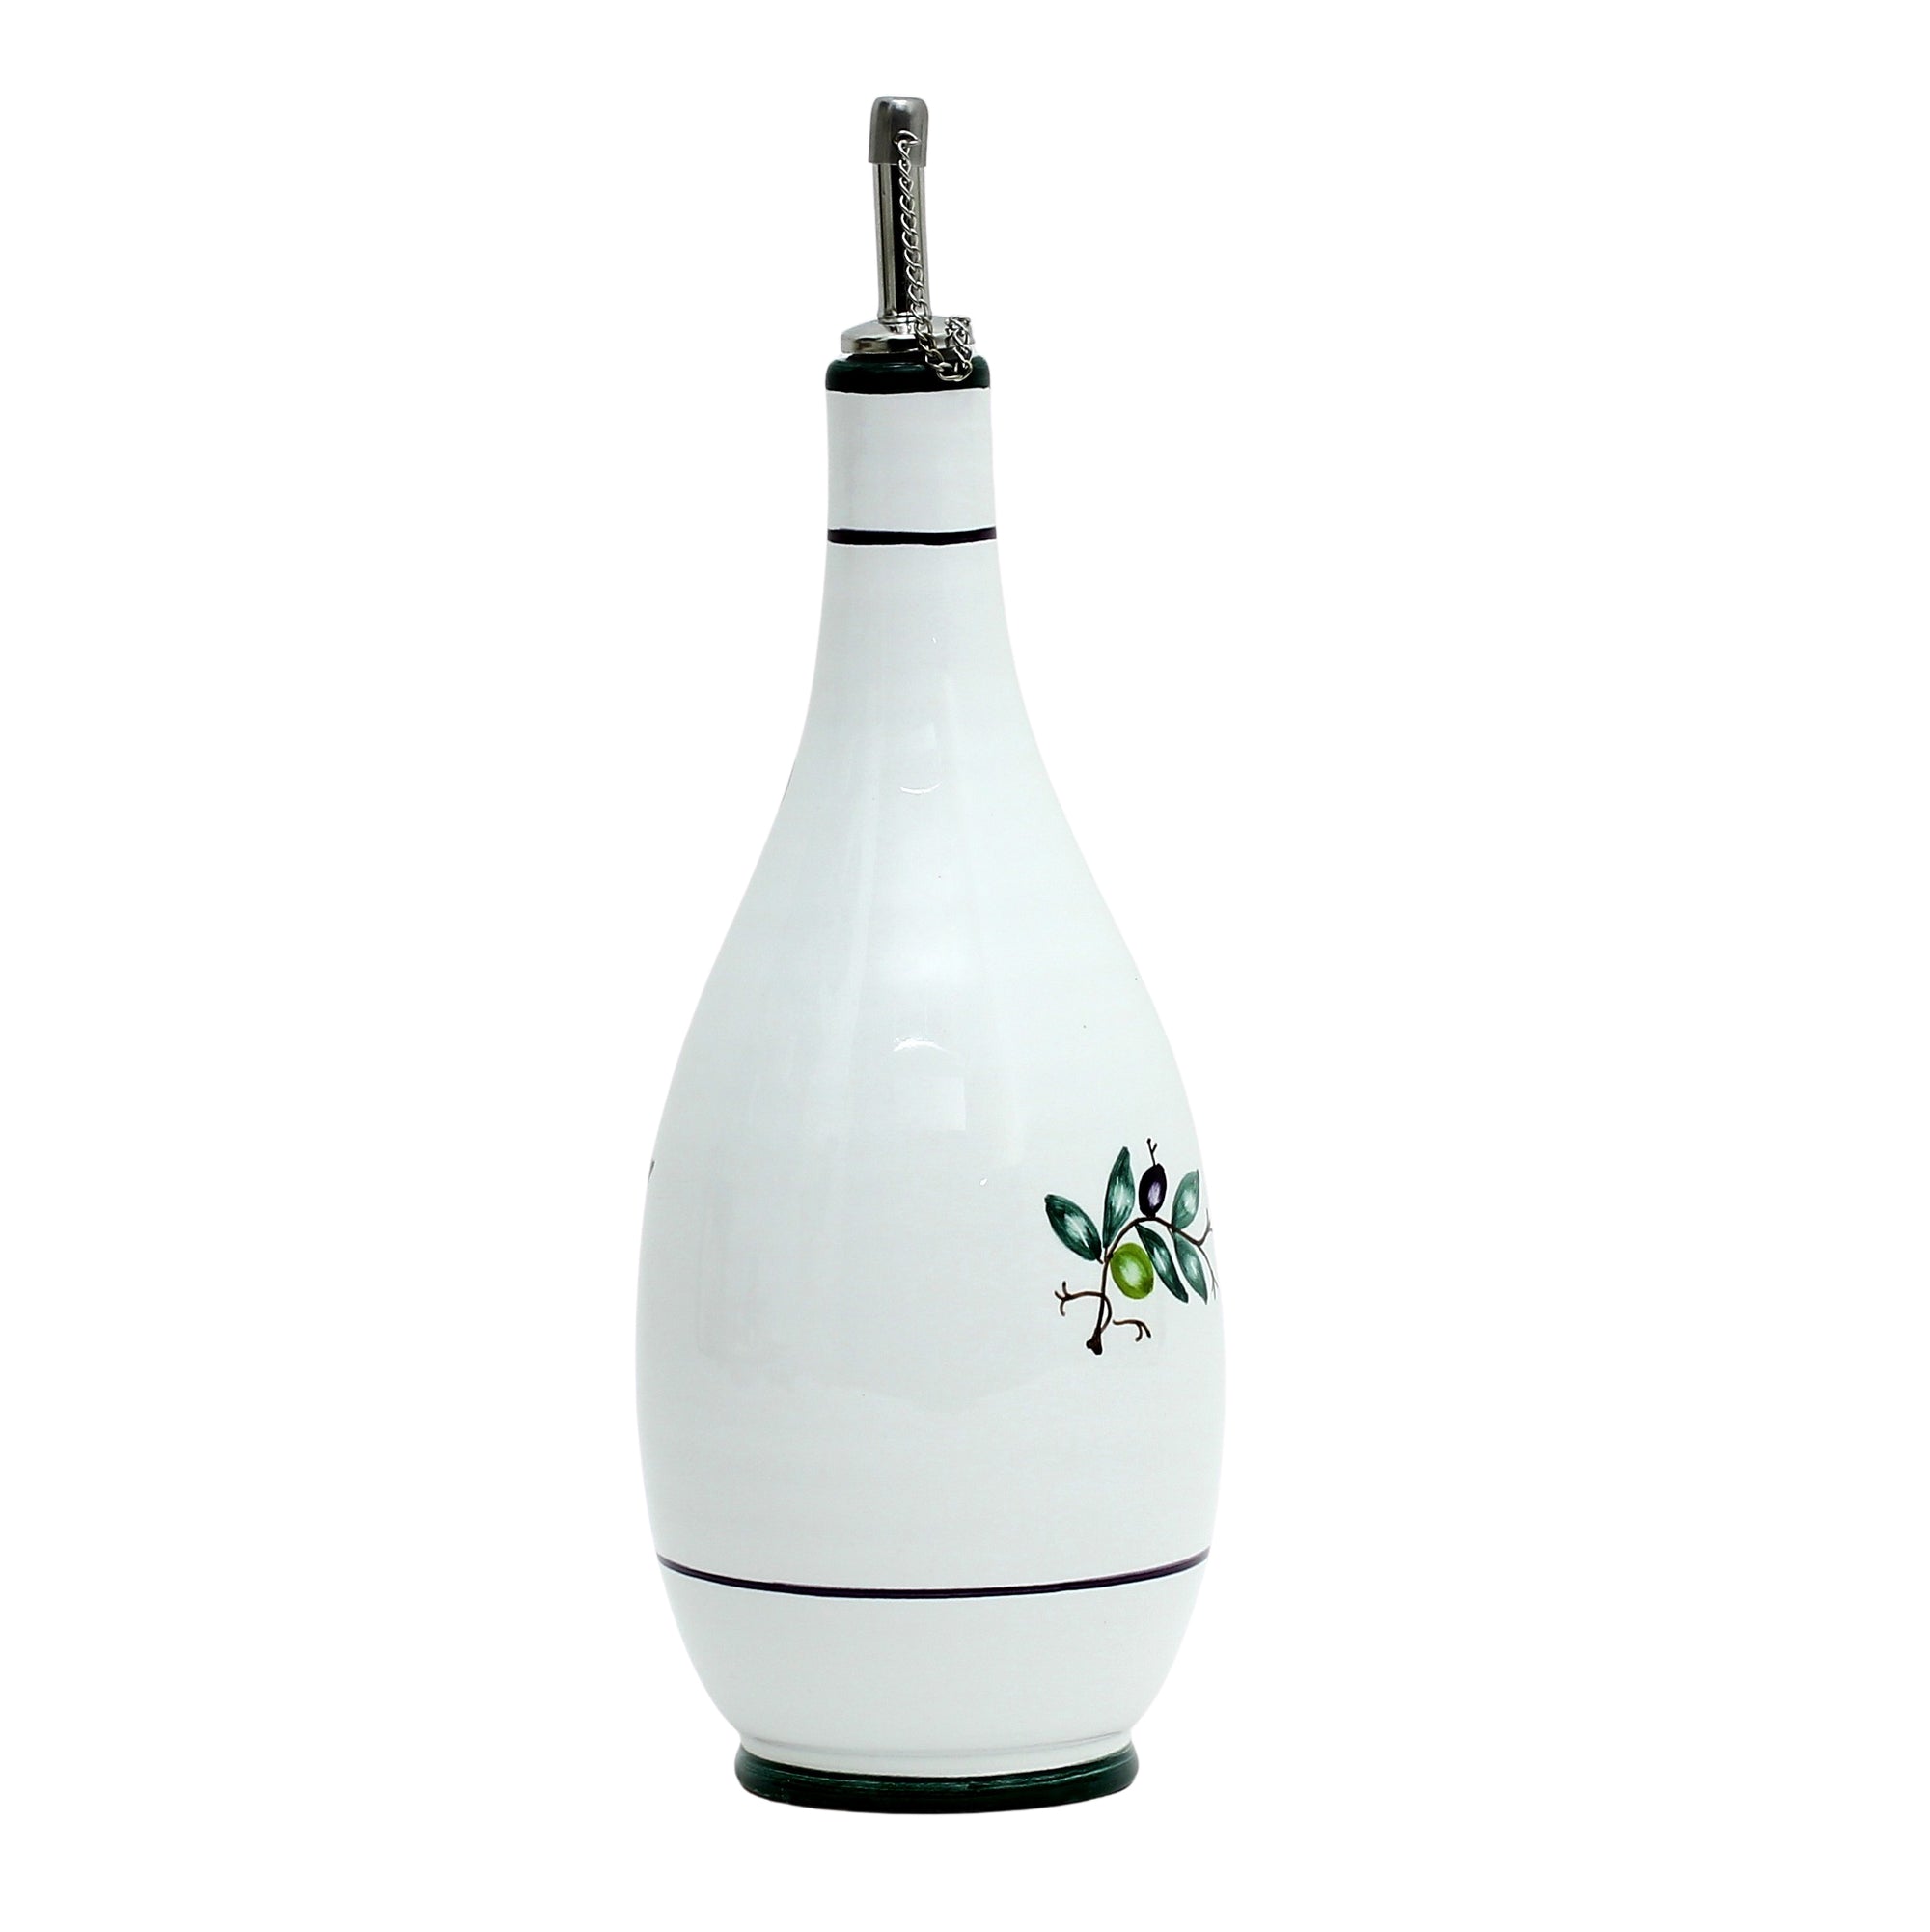 OLIVA: Olive Oil Bottle Dispenser - Artistica.com